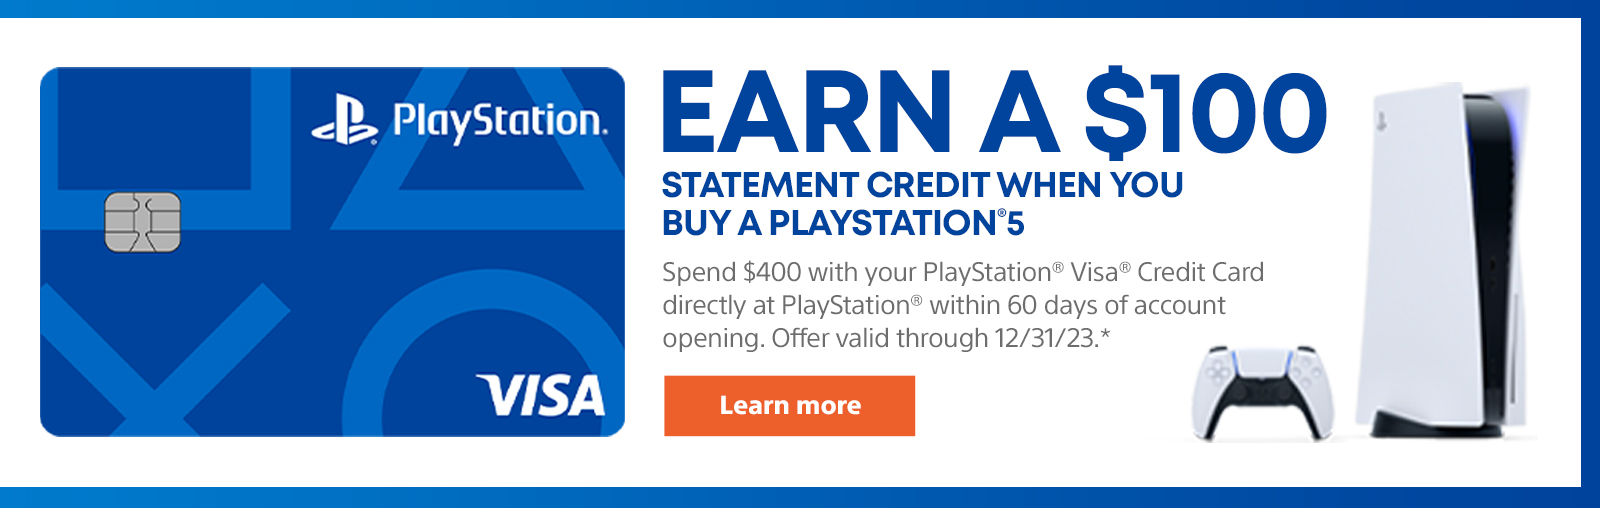 購買PlayStation 5.使用PlayStation Visa信用卡時，請賺取100美元的陳述信貸，以在開設帳戶的60天內直接在PlayStation上花費400美元。提供有效期為12/31/23。